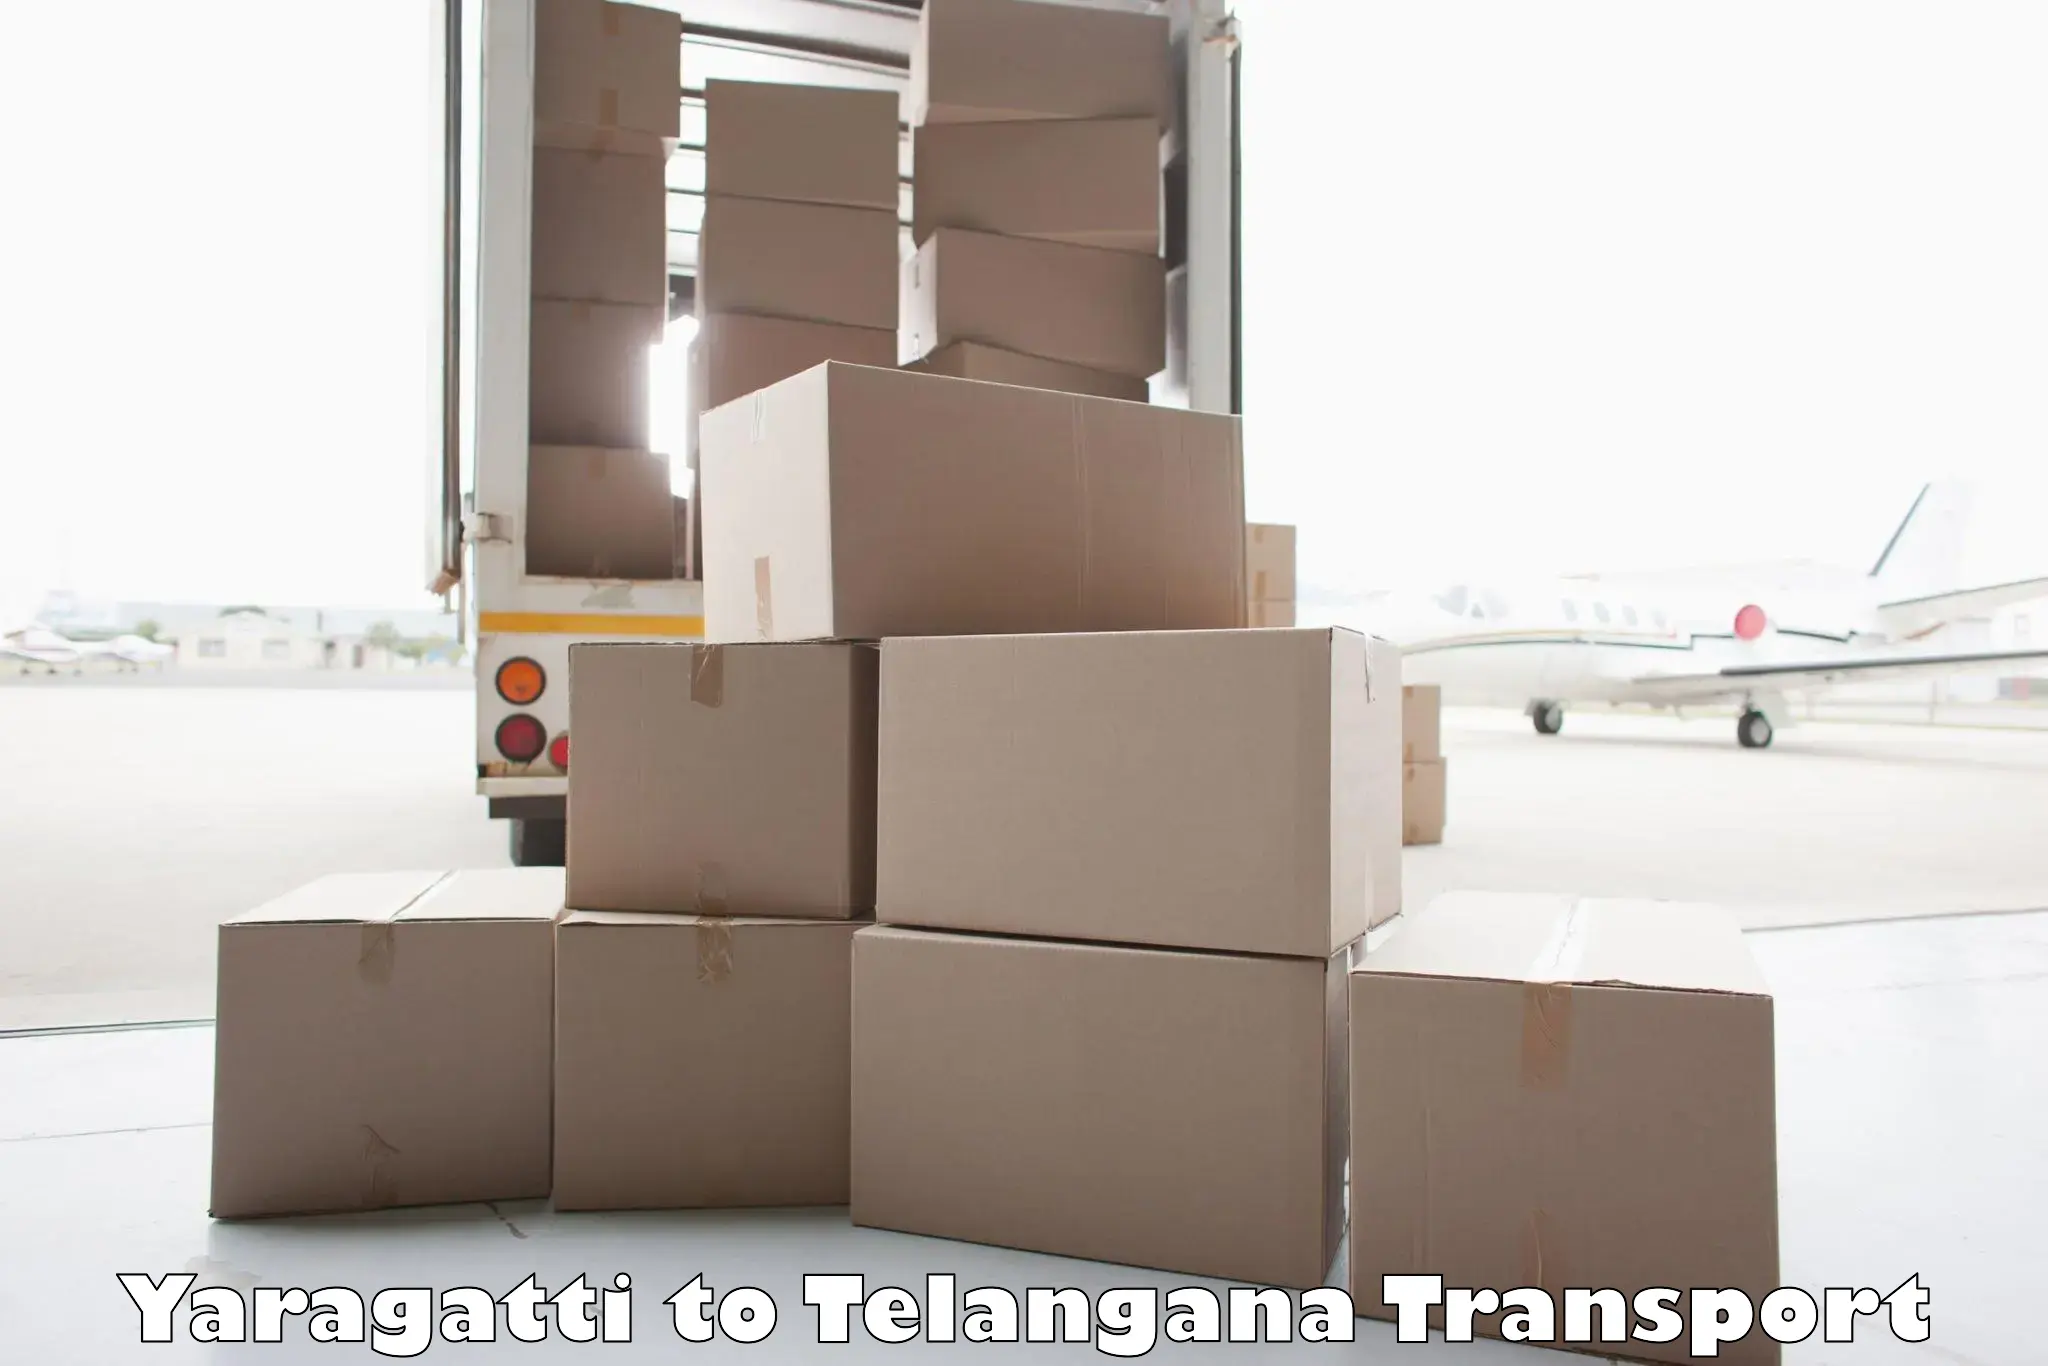 Vehicle transport services Yaragatti to Chennur